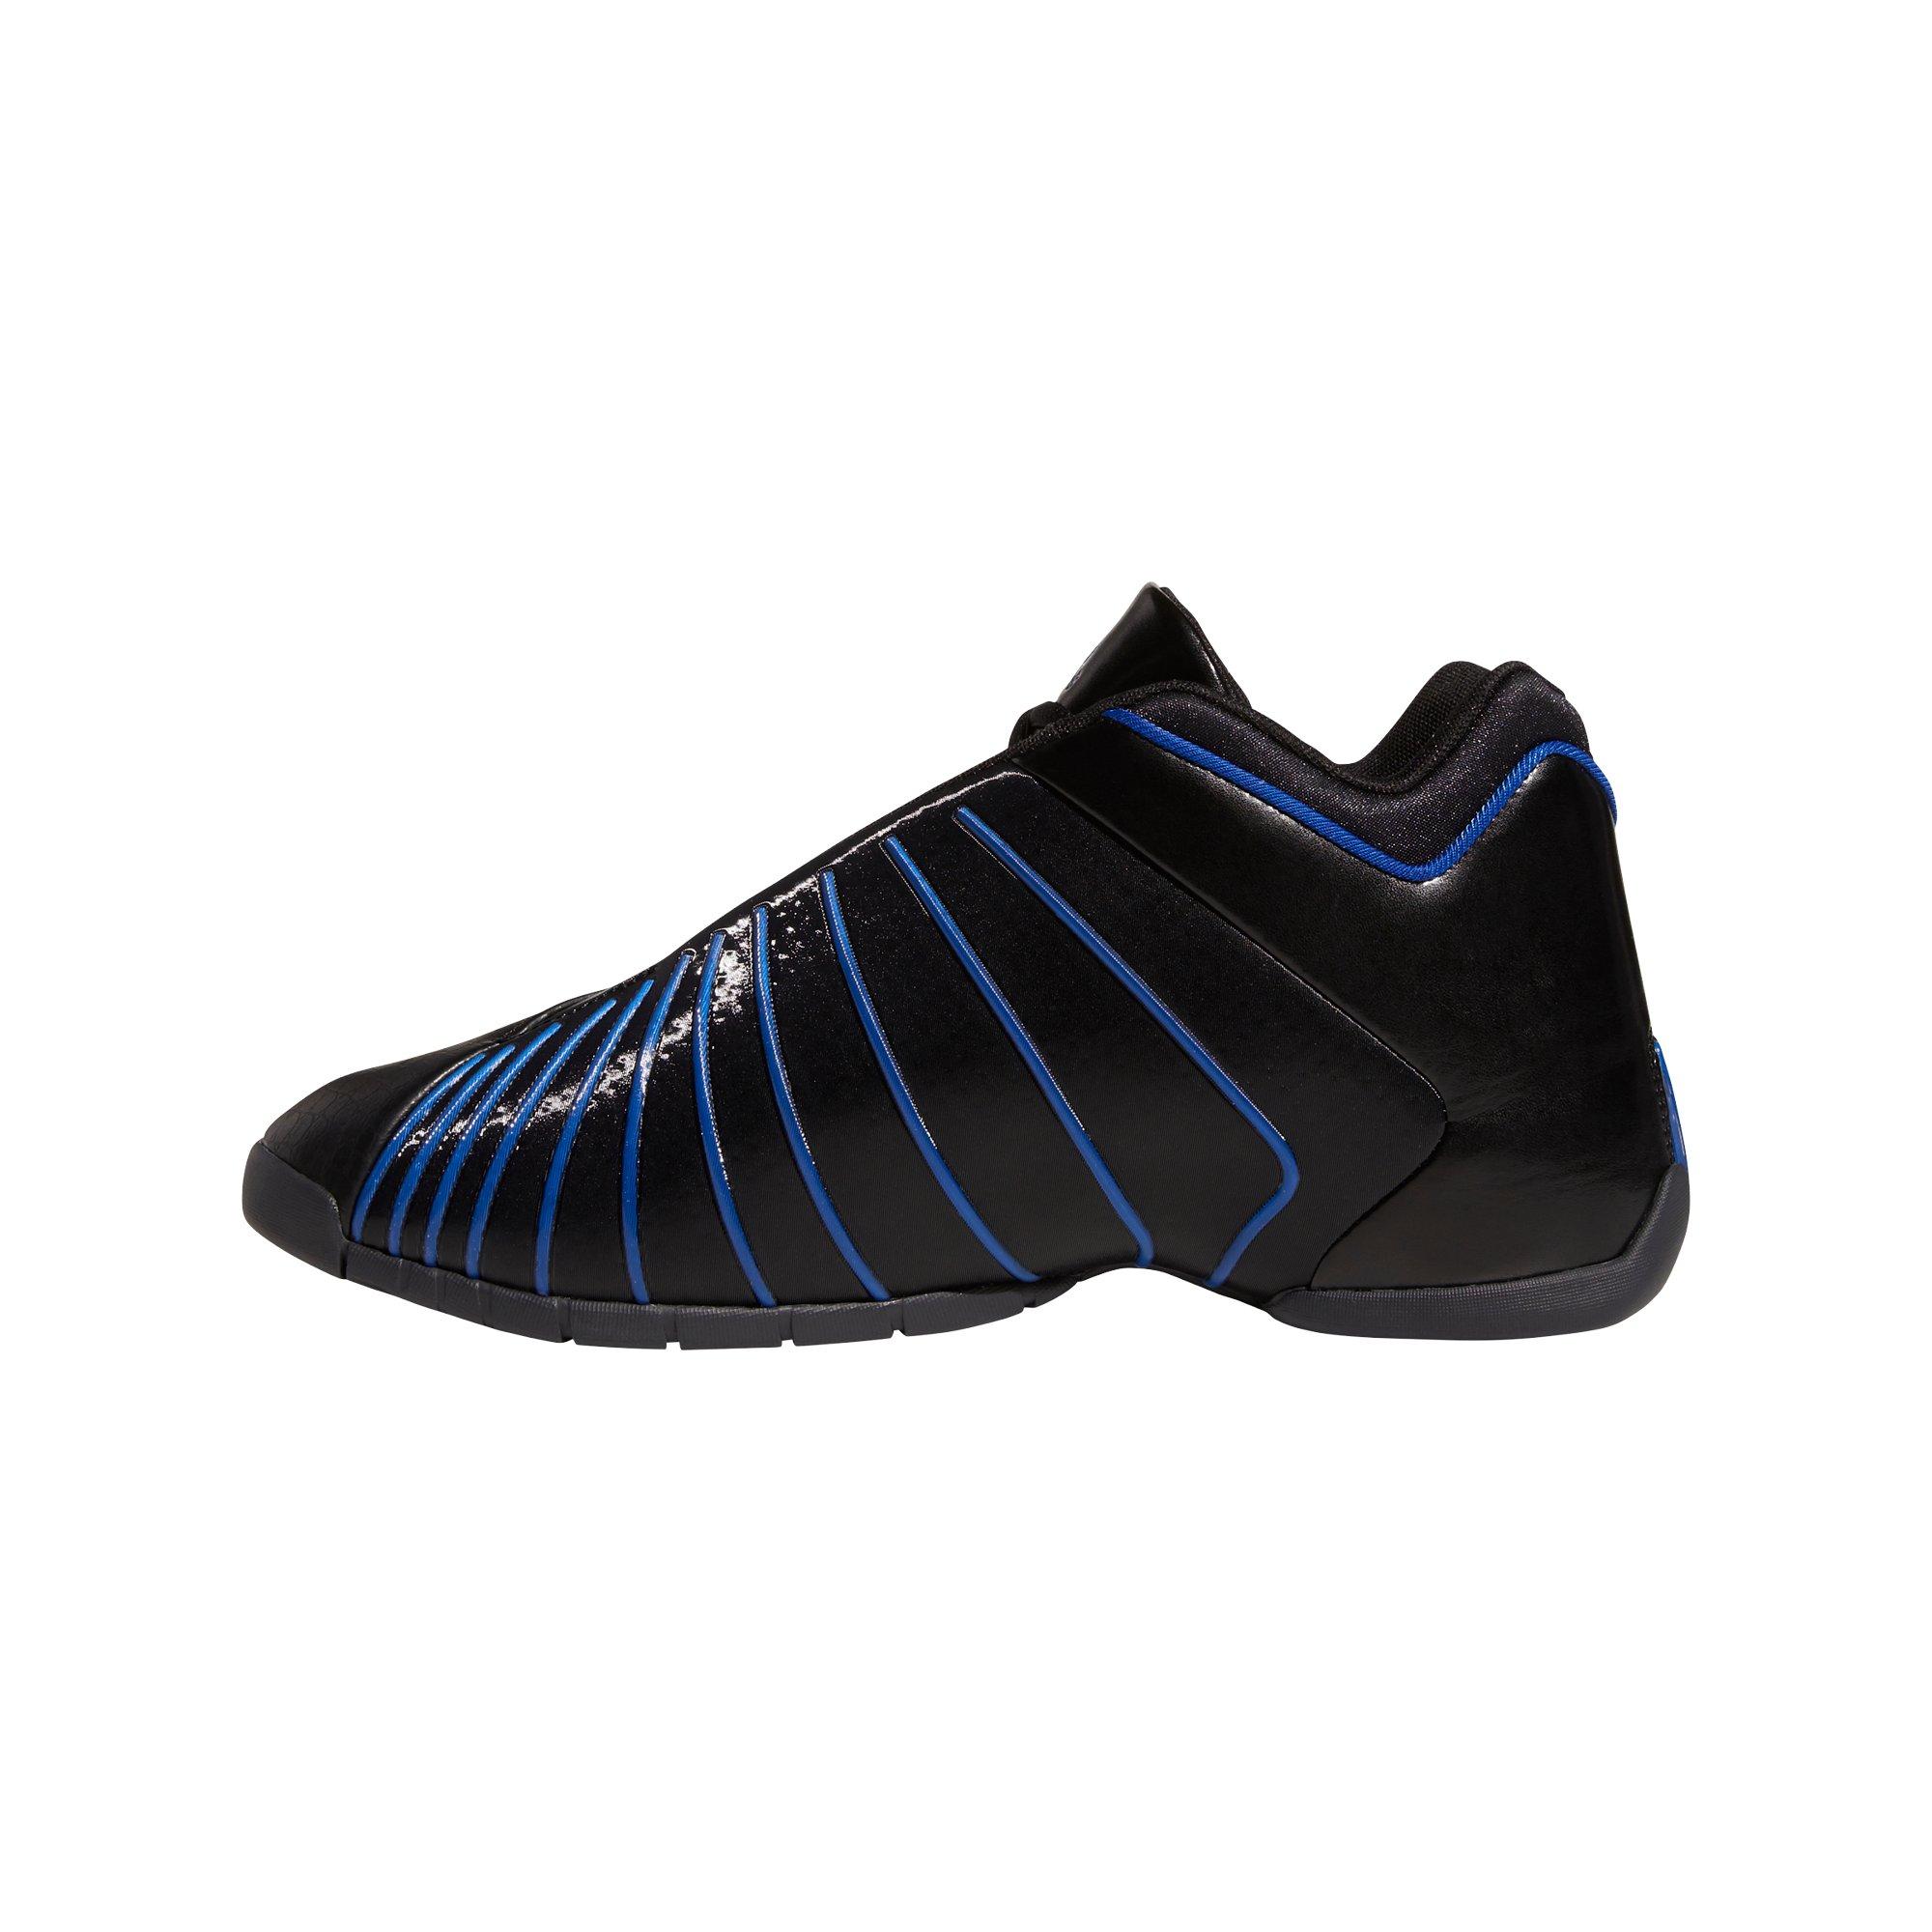 Adidas TMAC Restomod (Black/Royal Blue/Silver) 11.5